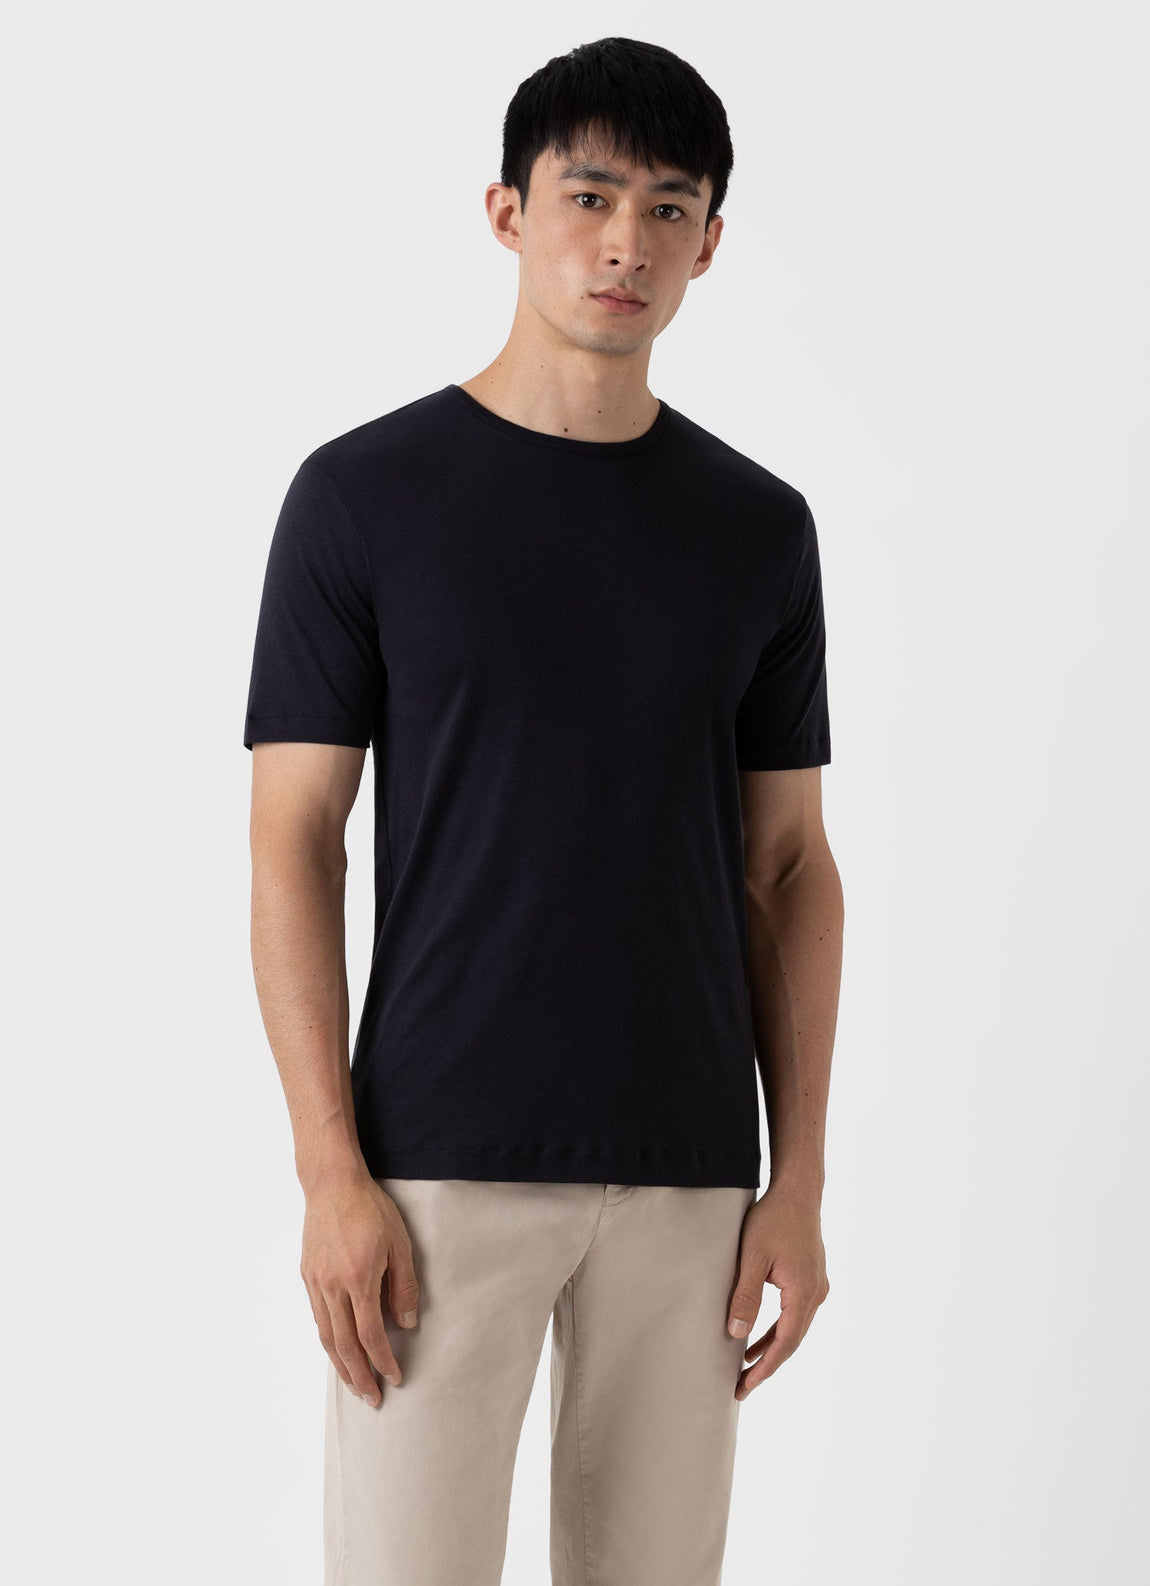 Men's Sea Island Cotton T-shirt in Black | Sunspel